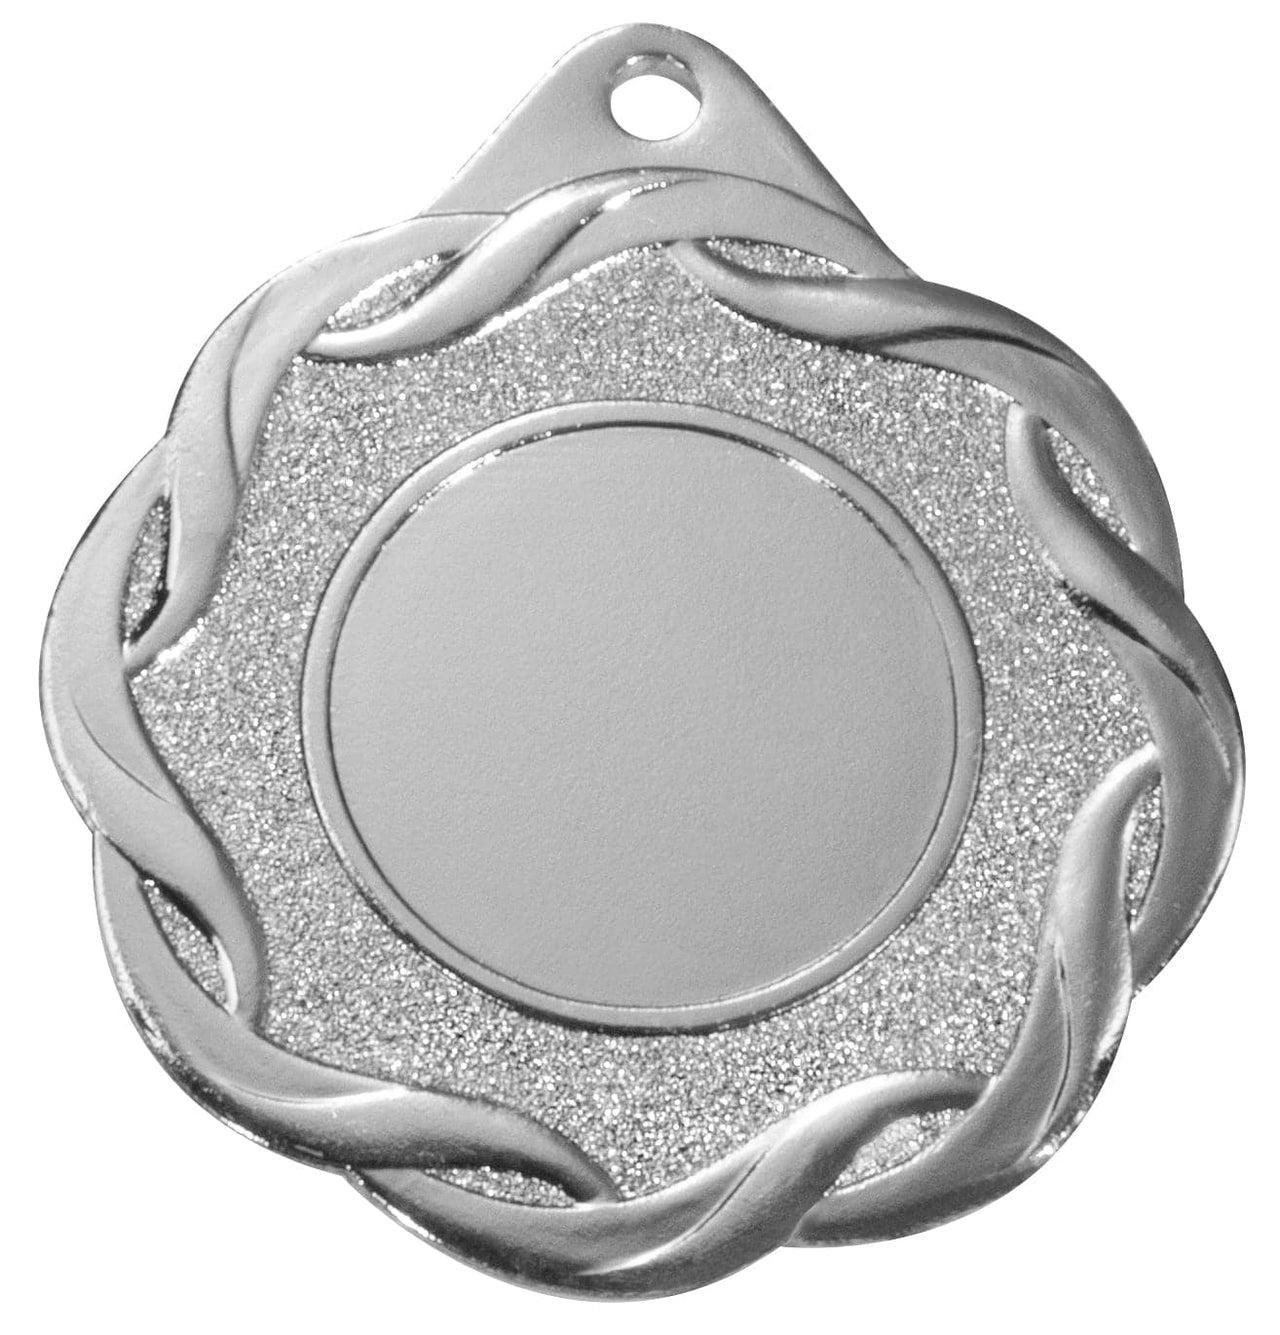 Eine Medaillen Jena 50 mm PK79336g-E25 silberne Auszeichnung mit glitzerndem Hintergrund und bandartigen Kanten.